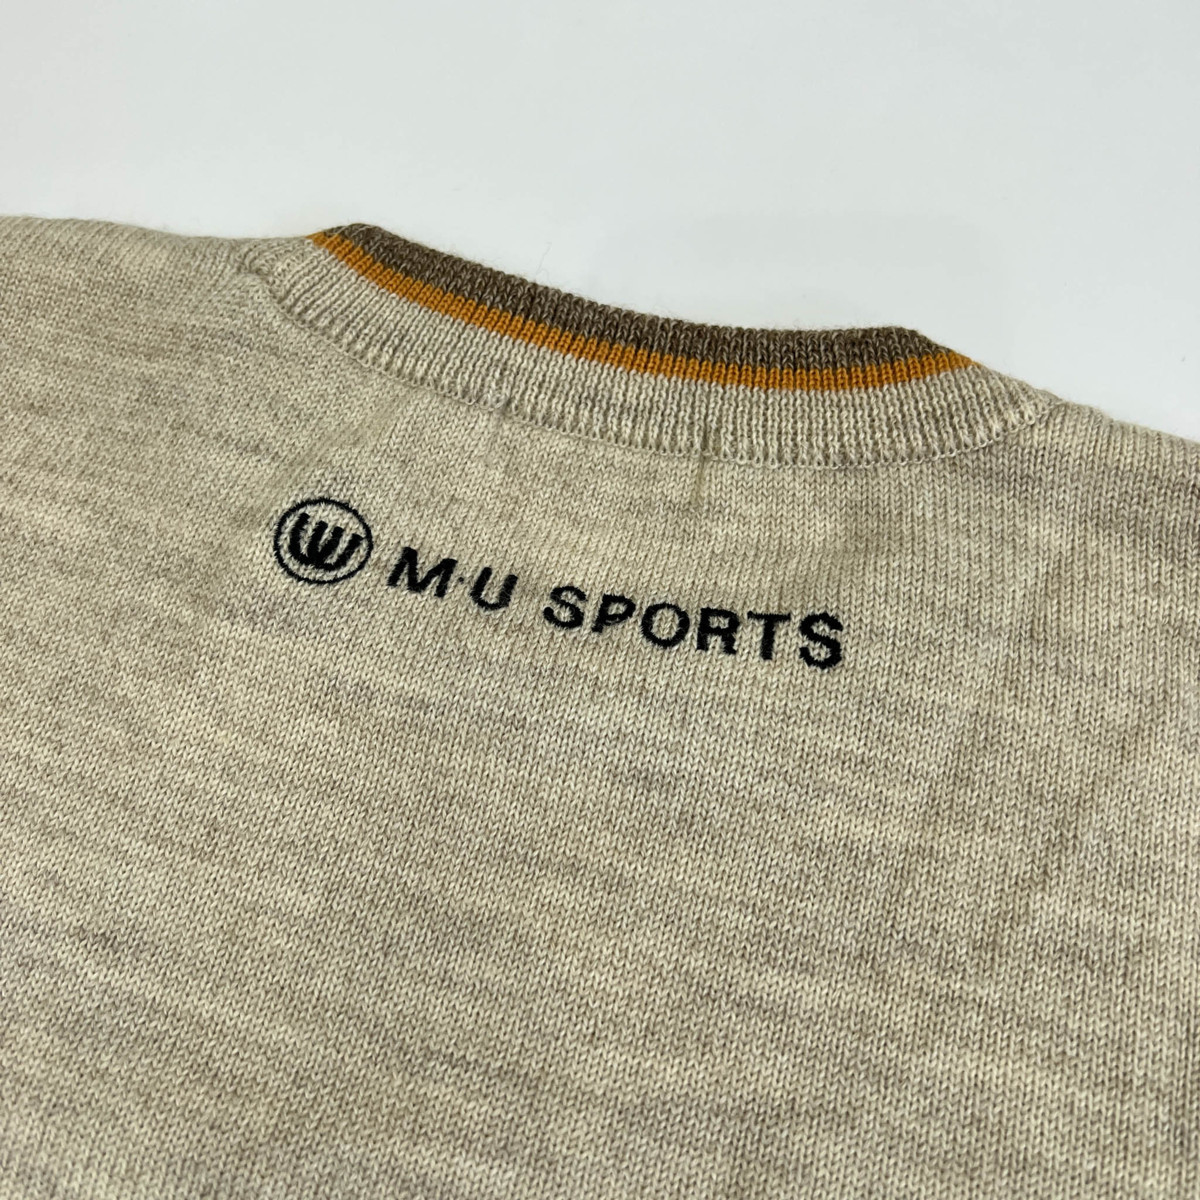 オシャレ柄入り!!◆MU SPORTS ミエコウエサコ デザイン入り ウールニットセーター サイズ 42 /日本製/男女でも/ゴルフ_画像5